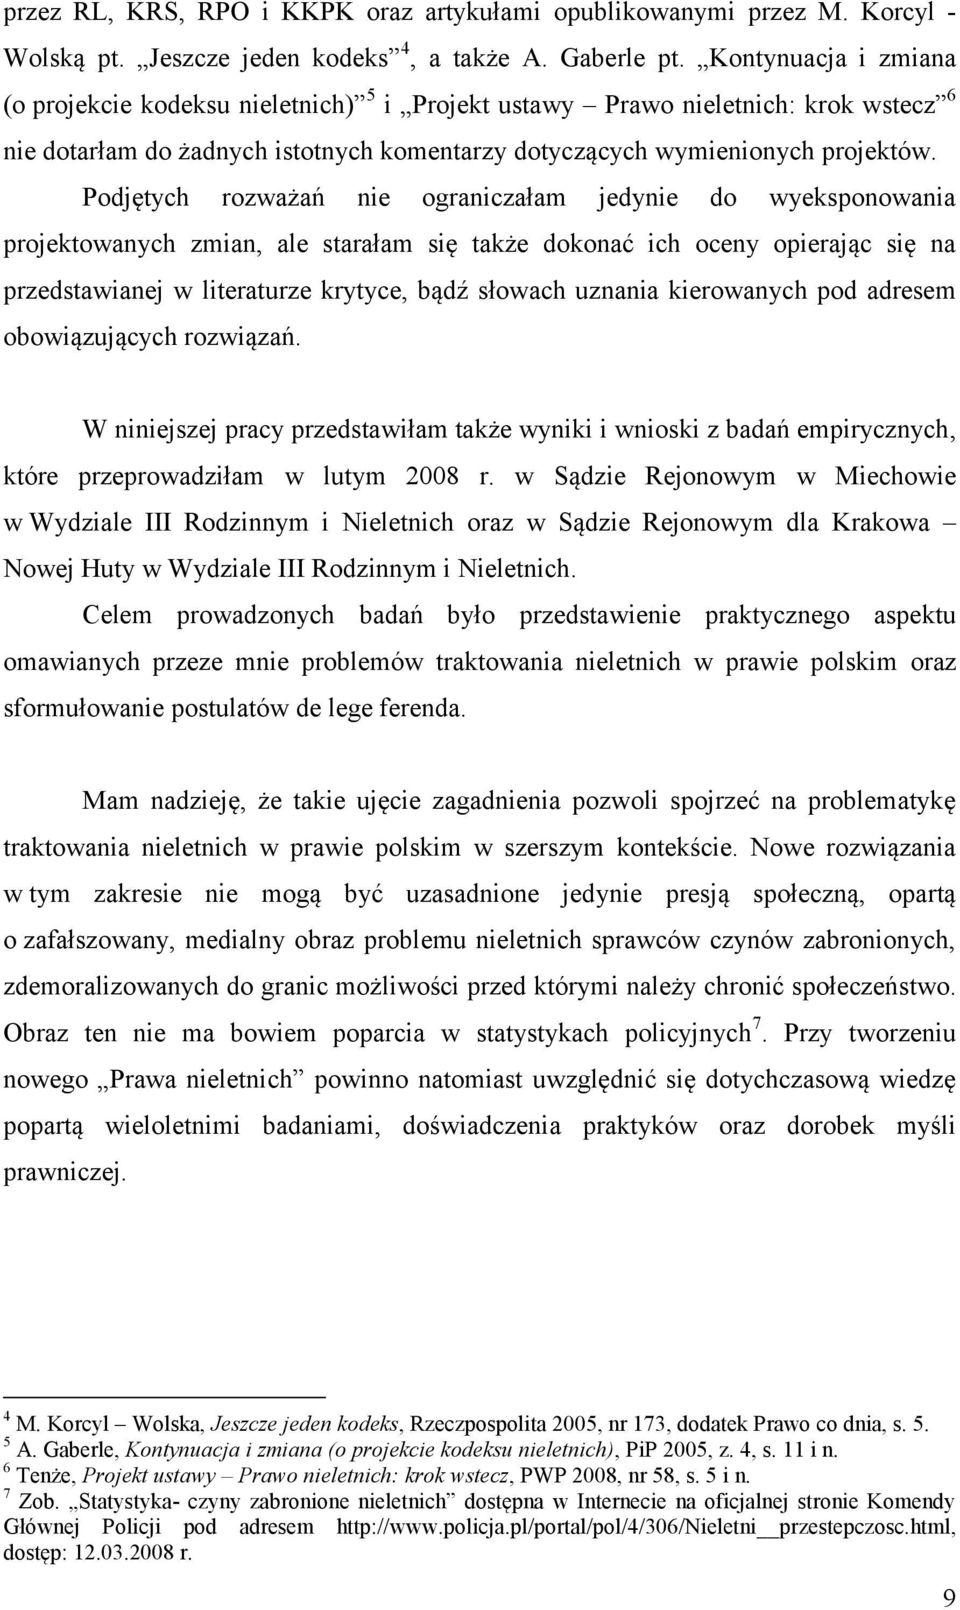 Wydział Prawa i Administracji PROBLEMY TRAKTOWANIA NIELETNICH W PRAWIE  POLSKIM - PDF Darmowe pobieranie